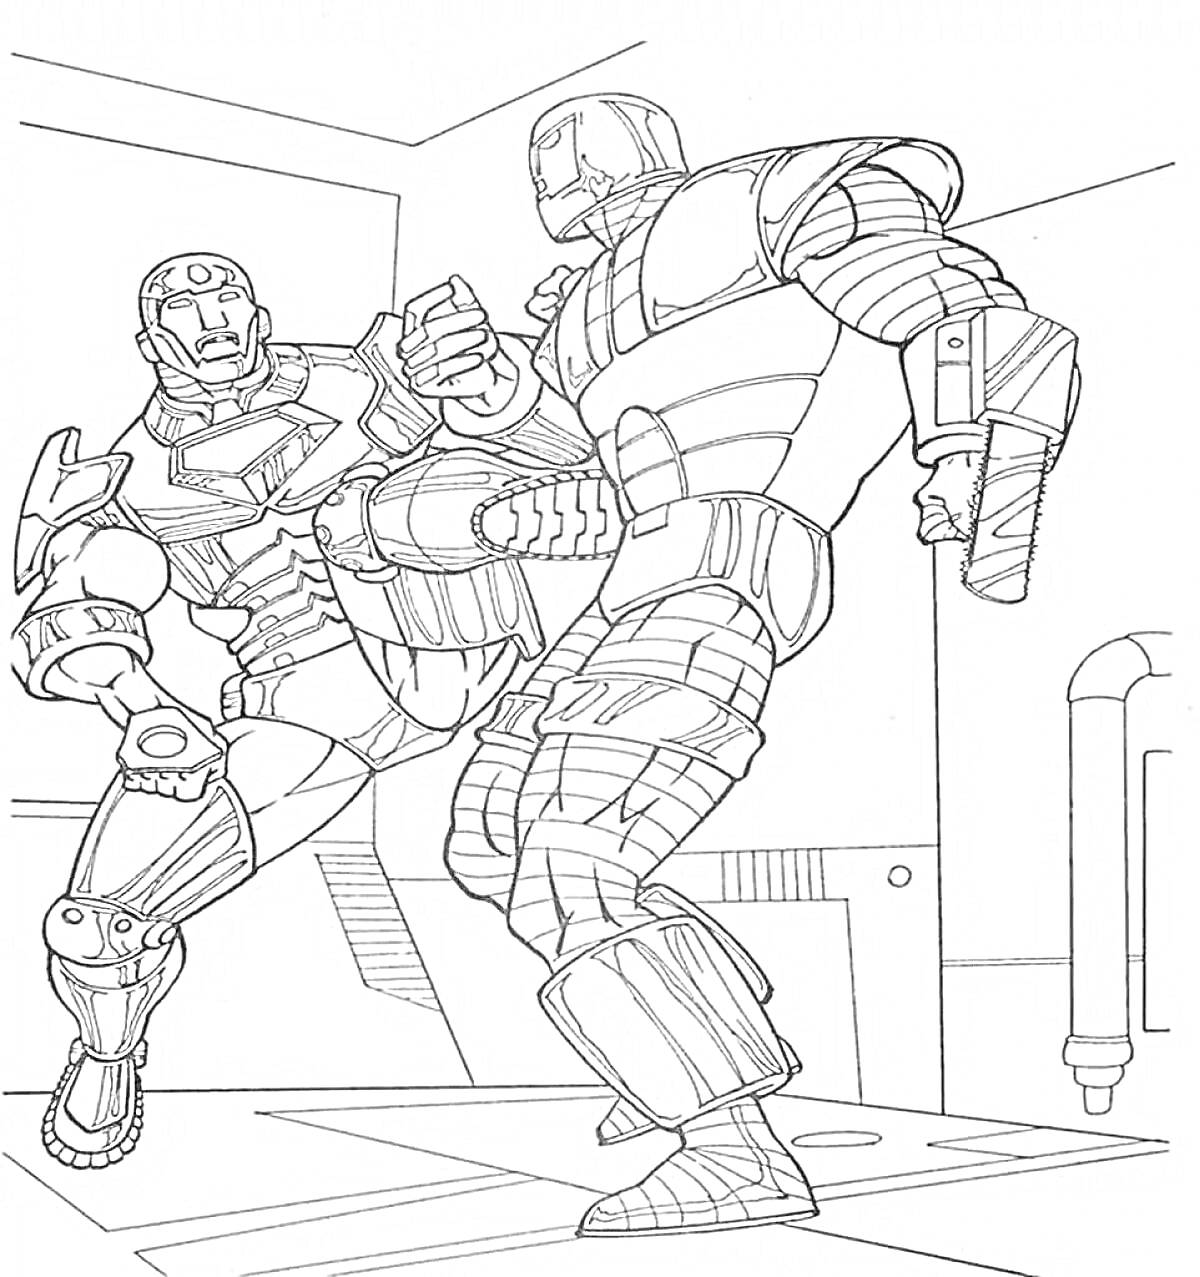 Раскраска Железный человек в бою с другим бронированным персонажем на фоне технологического интерьера.